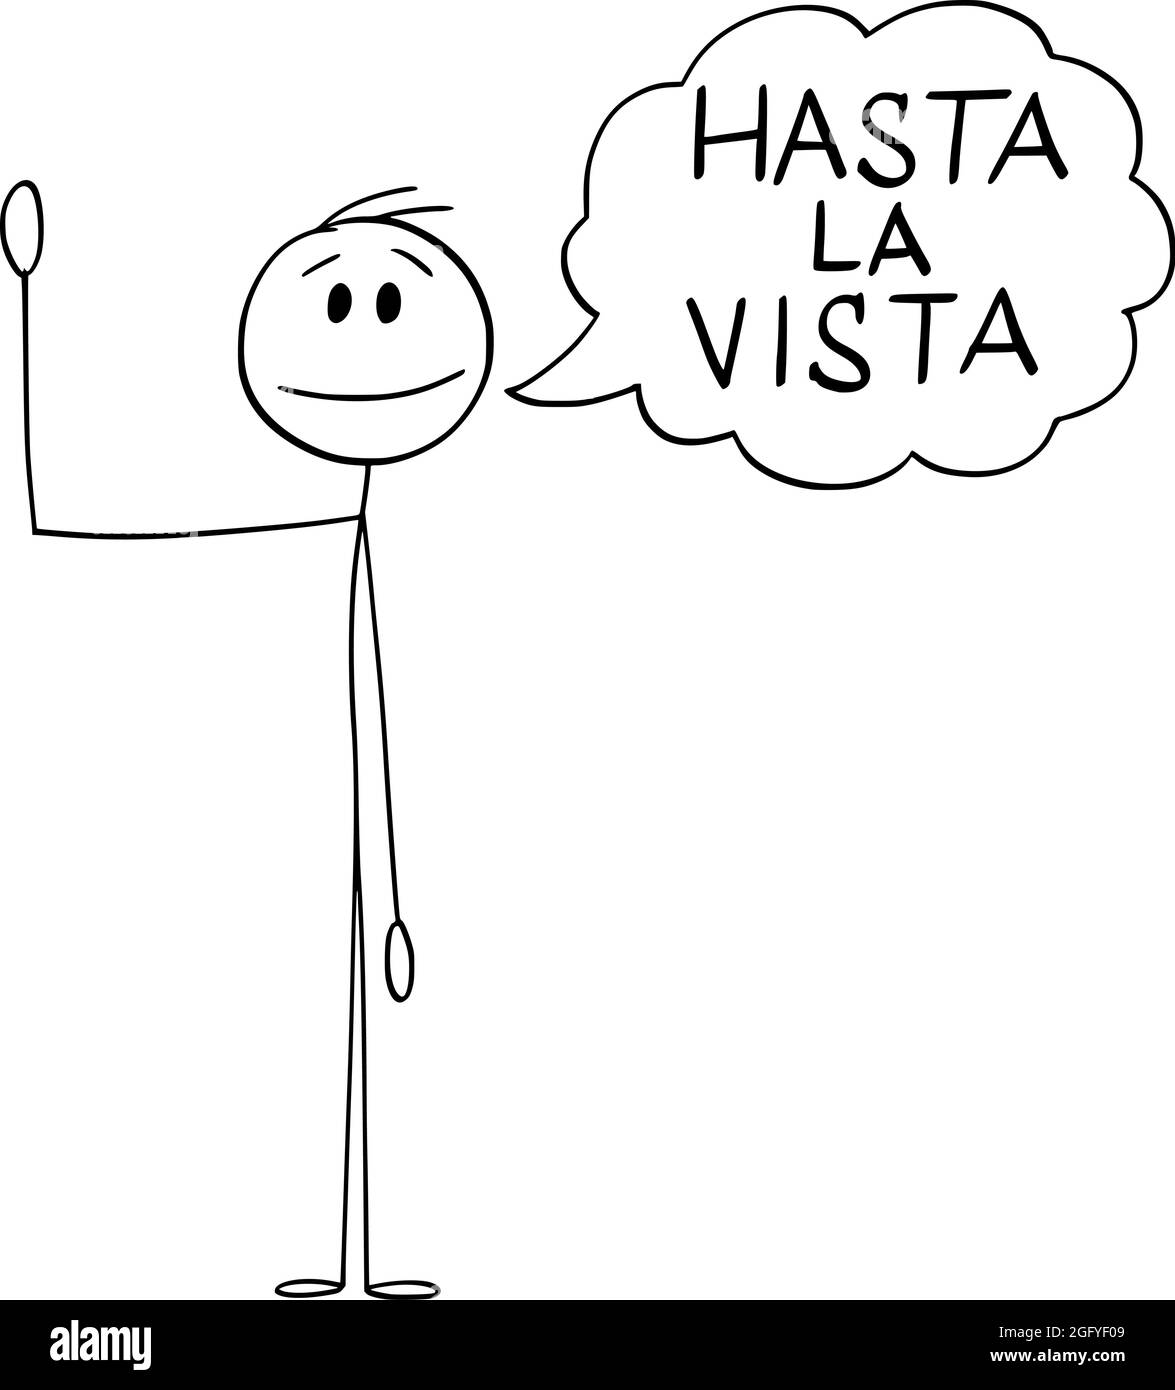 Person oder Mann winkt seine Hand und sagt Gruß Hasta la Vista auf Spanisch, Vektor Cartoon Stick Figur Illustration Stock Vektor